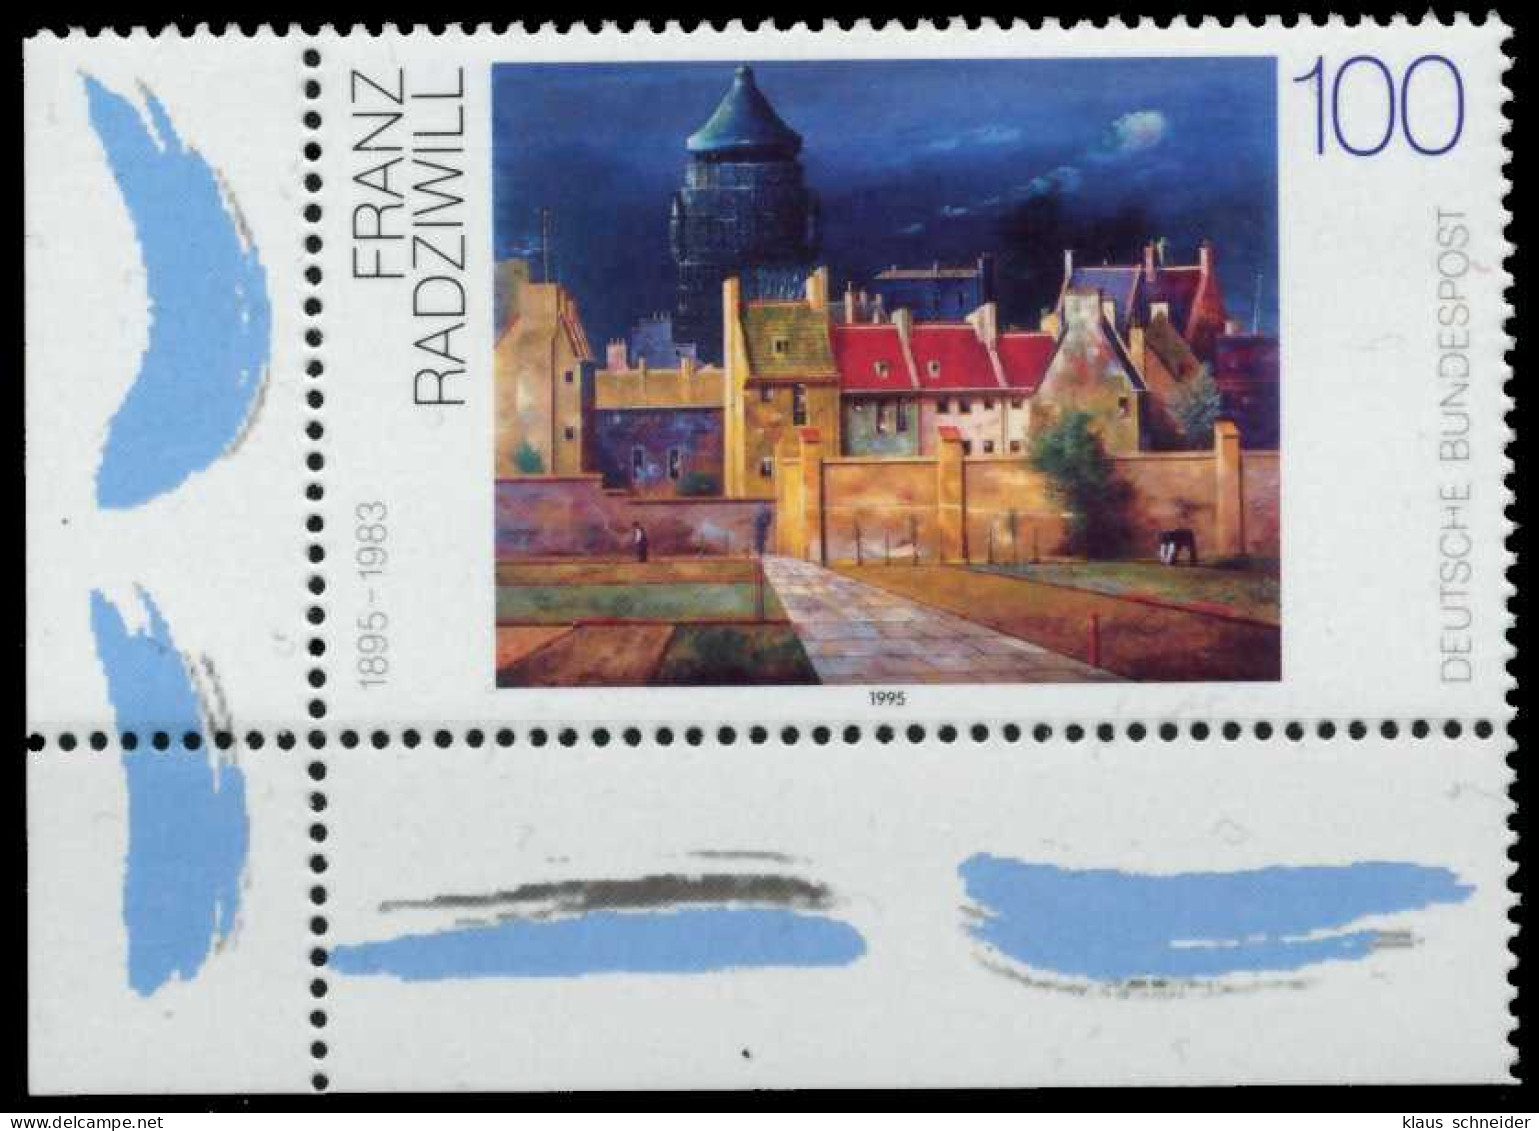 BRD 1995 Nr 1774 Postfrisch ECKE-ULI X765356 - Unused Stamps